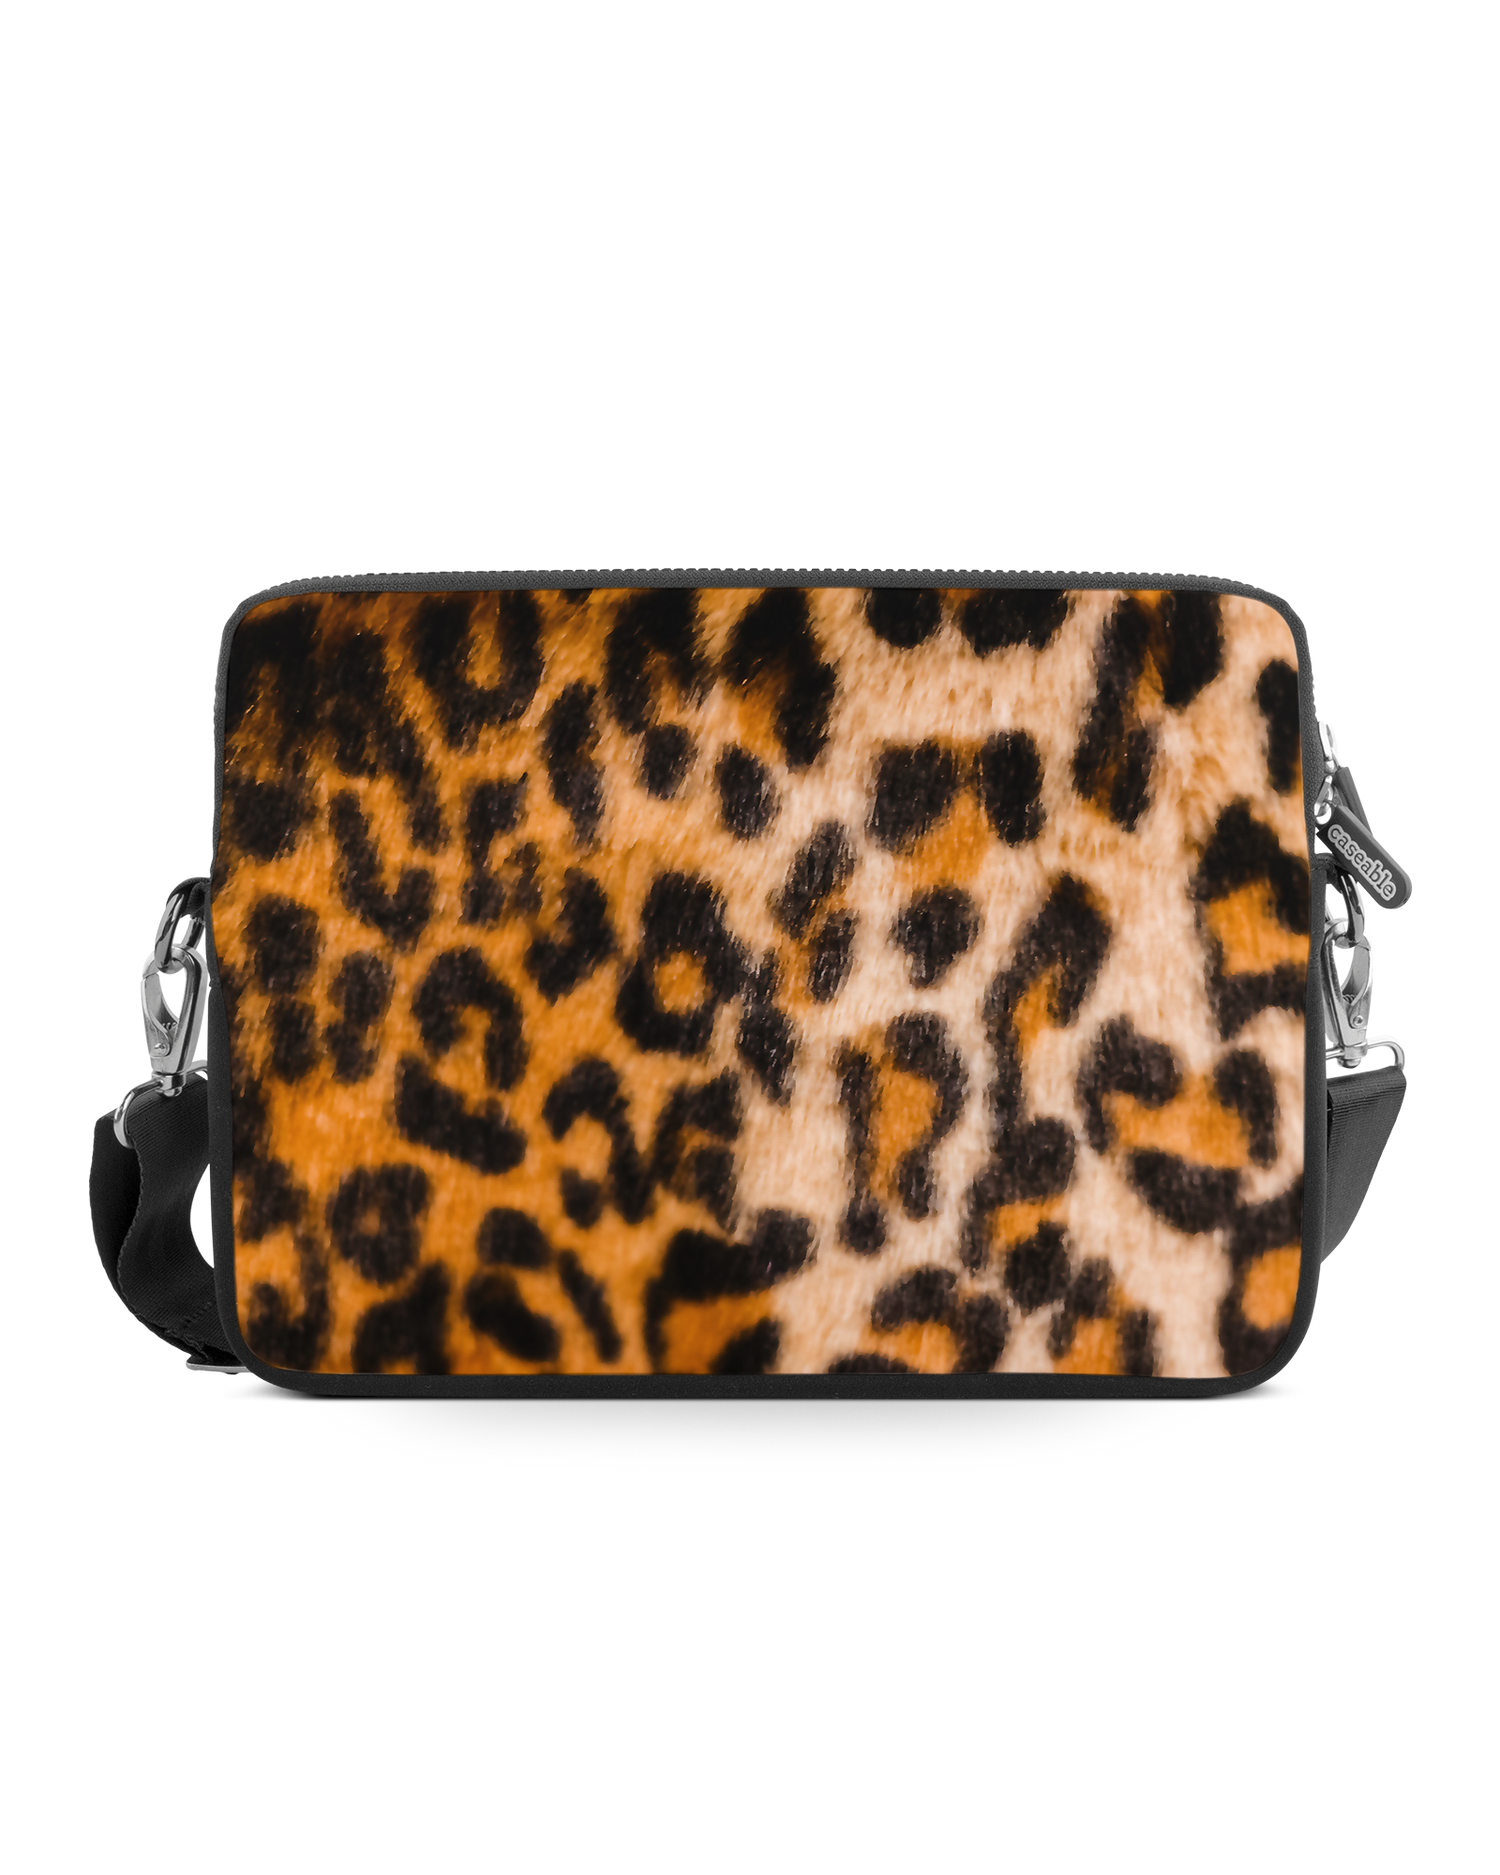 Leopard Pattern Premium Laptop Bag 15 inch: Front View